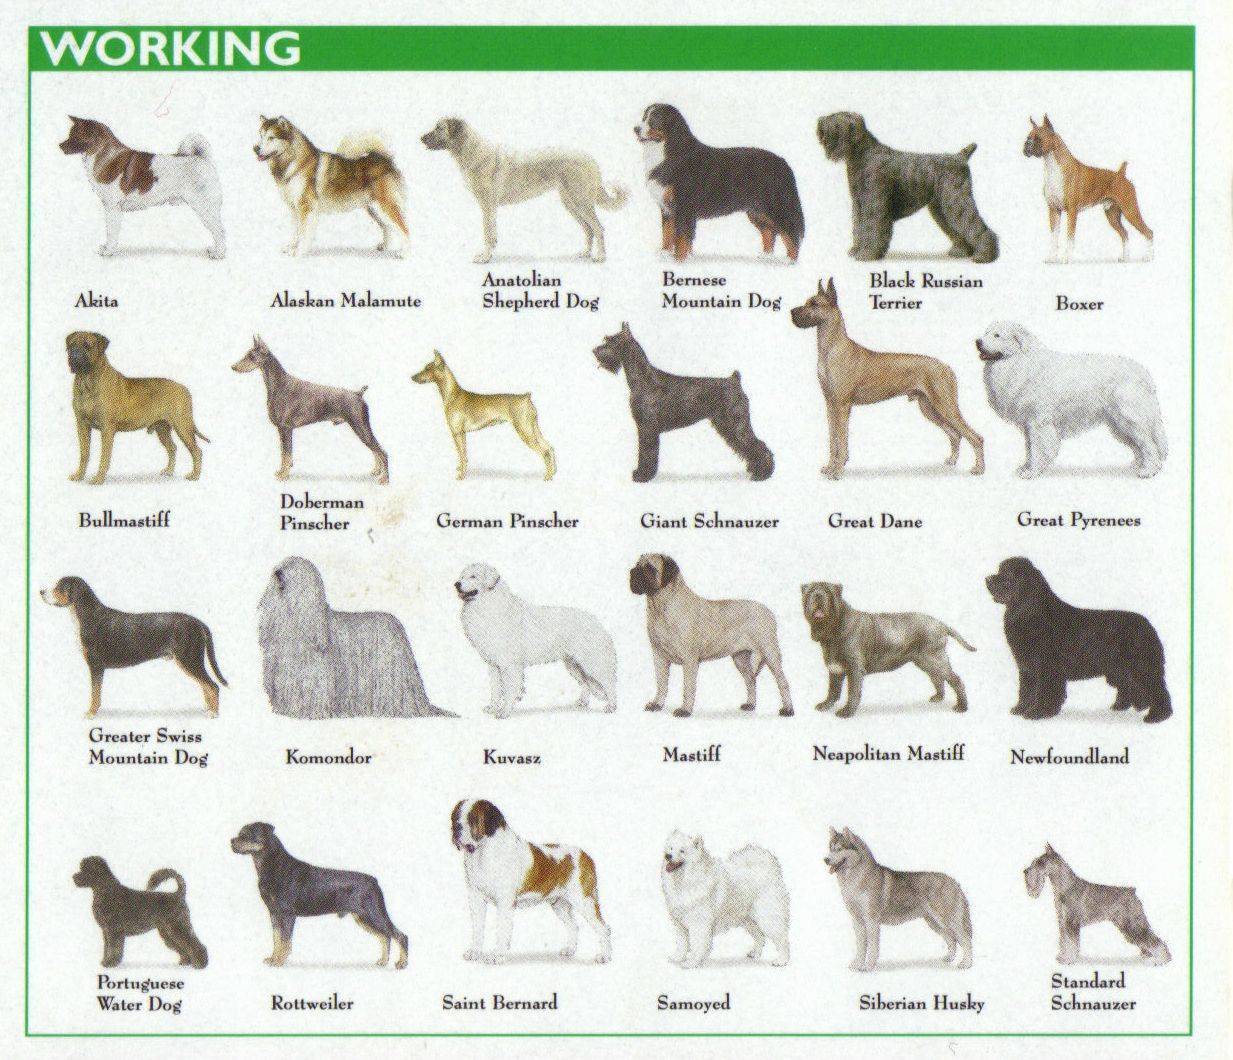 Породы собак с фотографиями, названиями и описанием